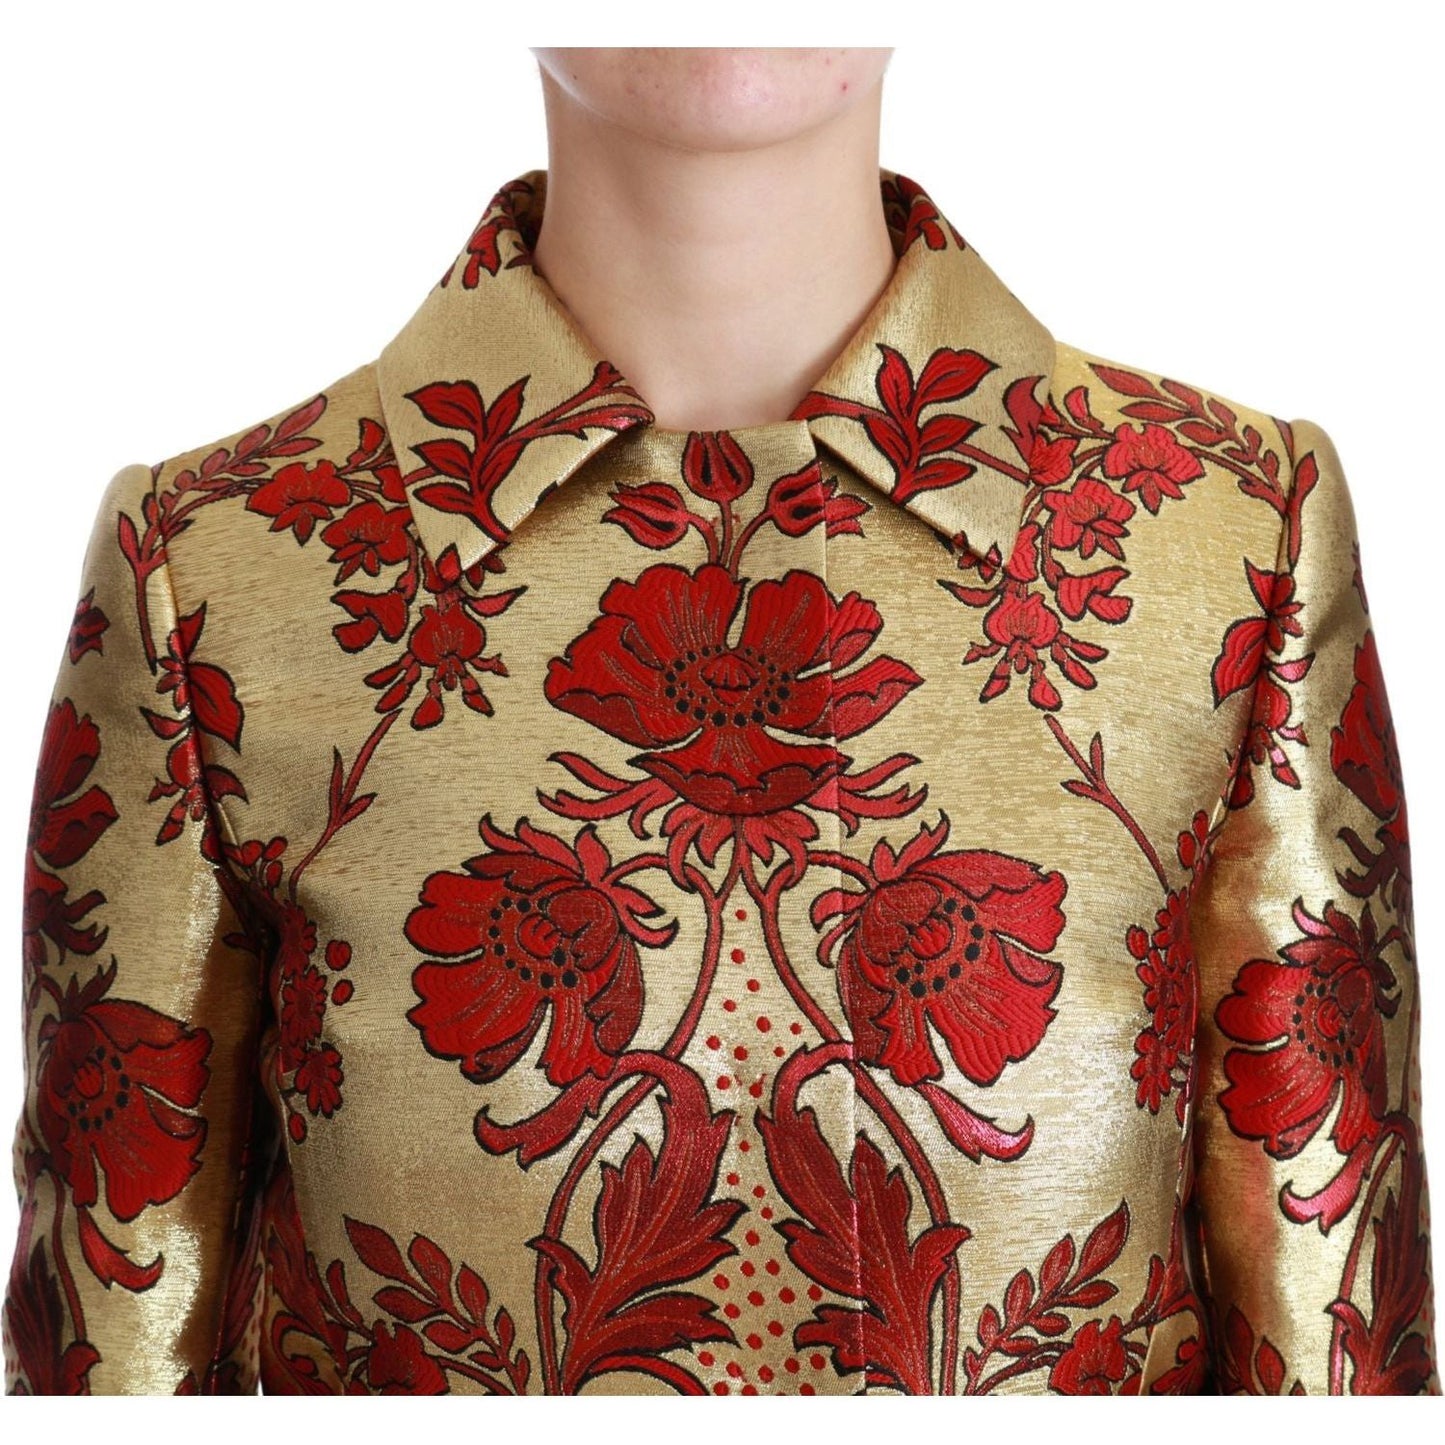 Dolce & Gabbana Elegant Gold Floral Brocade Trench Coat Coats & Jackets red-gold-floral-brocade-cape-coat-jacket